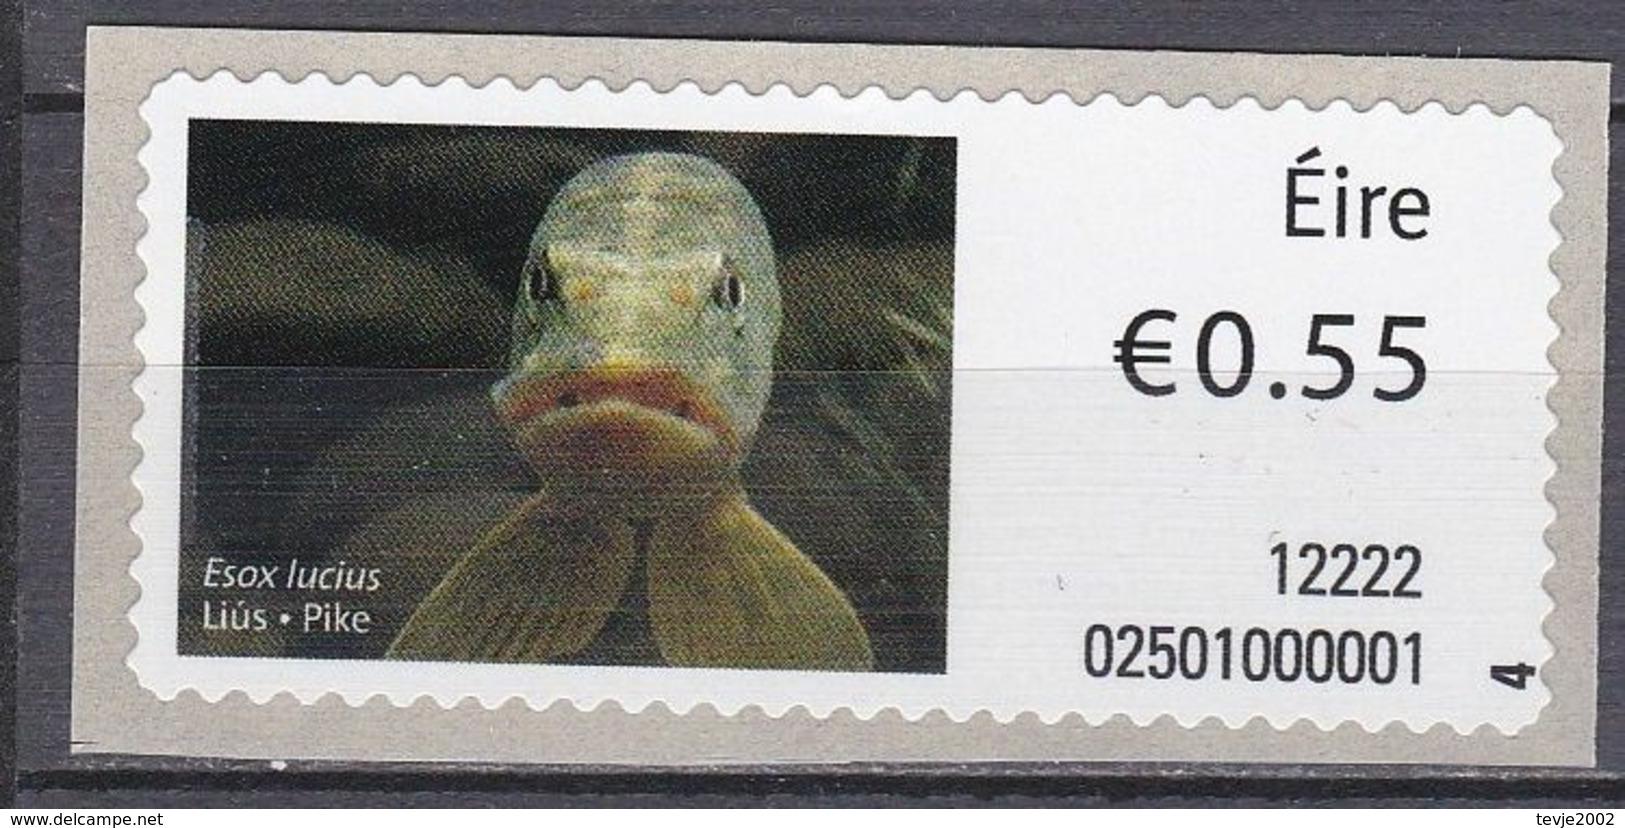 Irland Eire 2012 - ATM Mi.Nr. 36 - Postfrisch MNH - Tiere Animals Fische Fishes - Fische